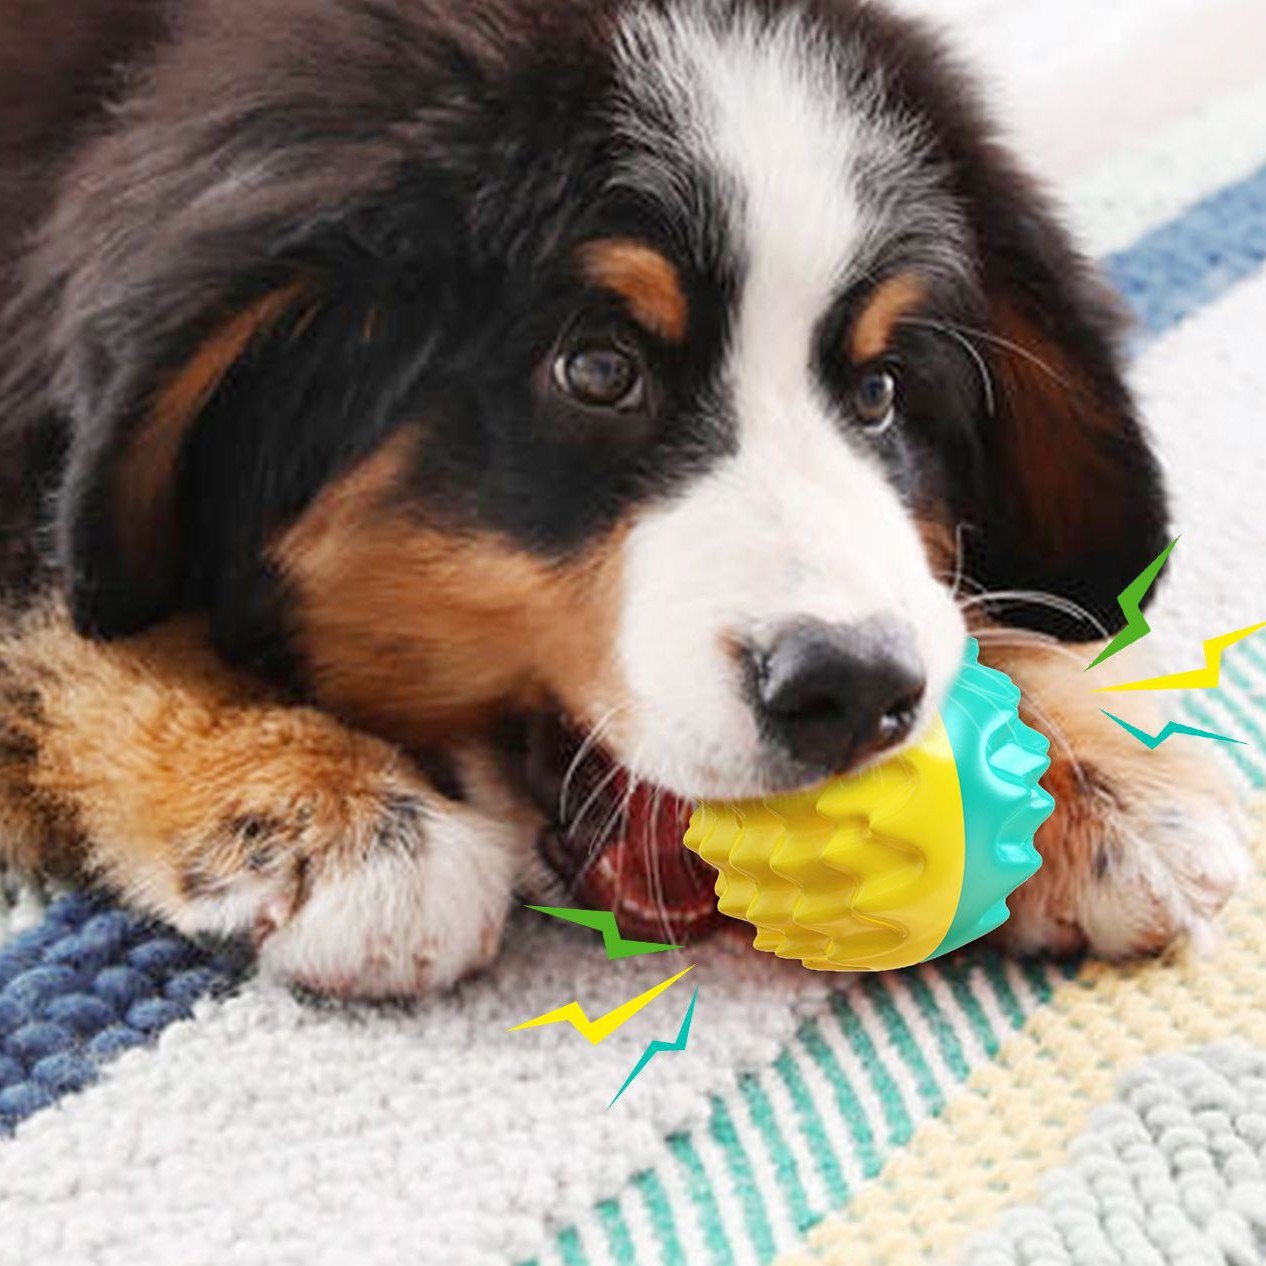 Љетне водене играчке за обуку паса са ТПР лоптом